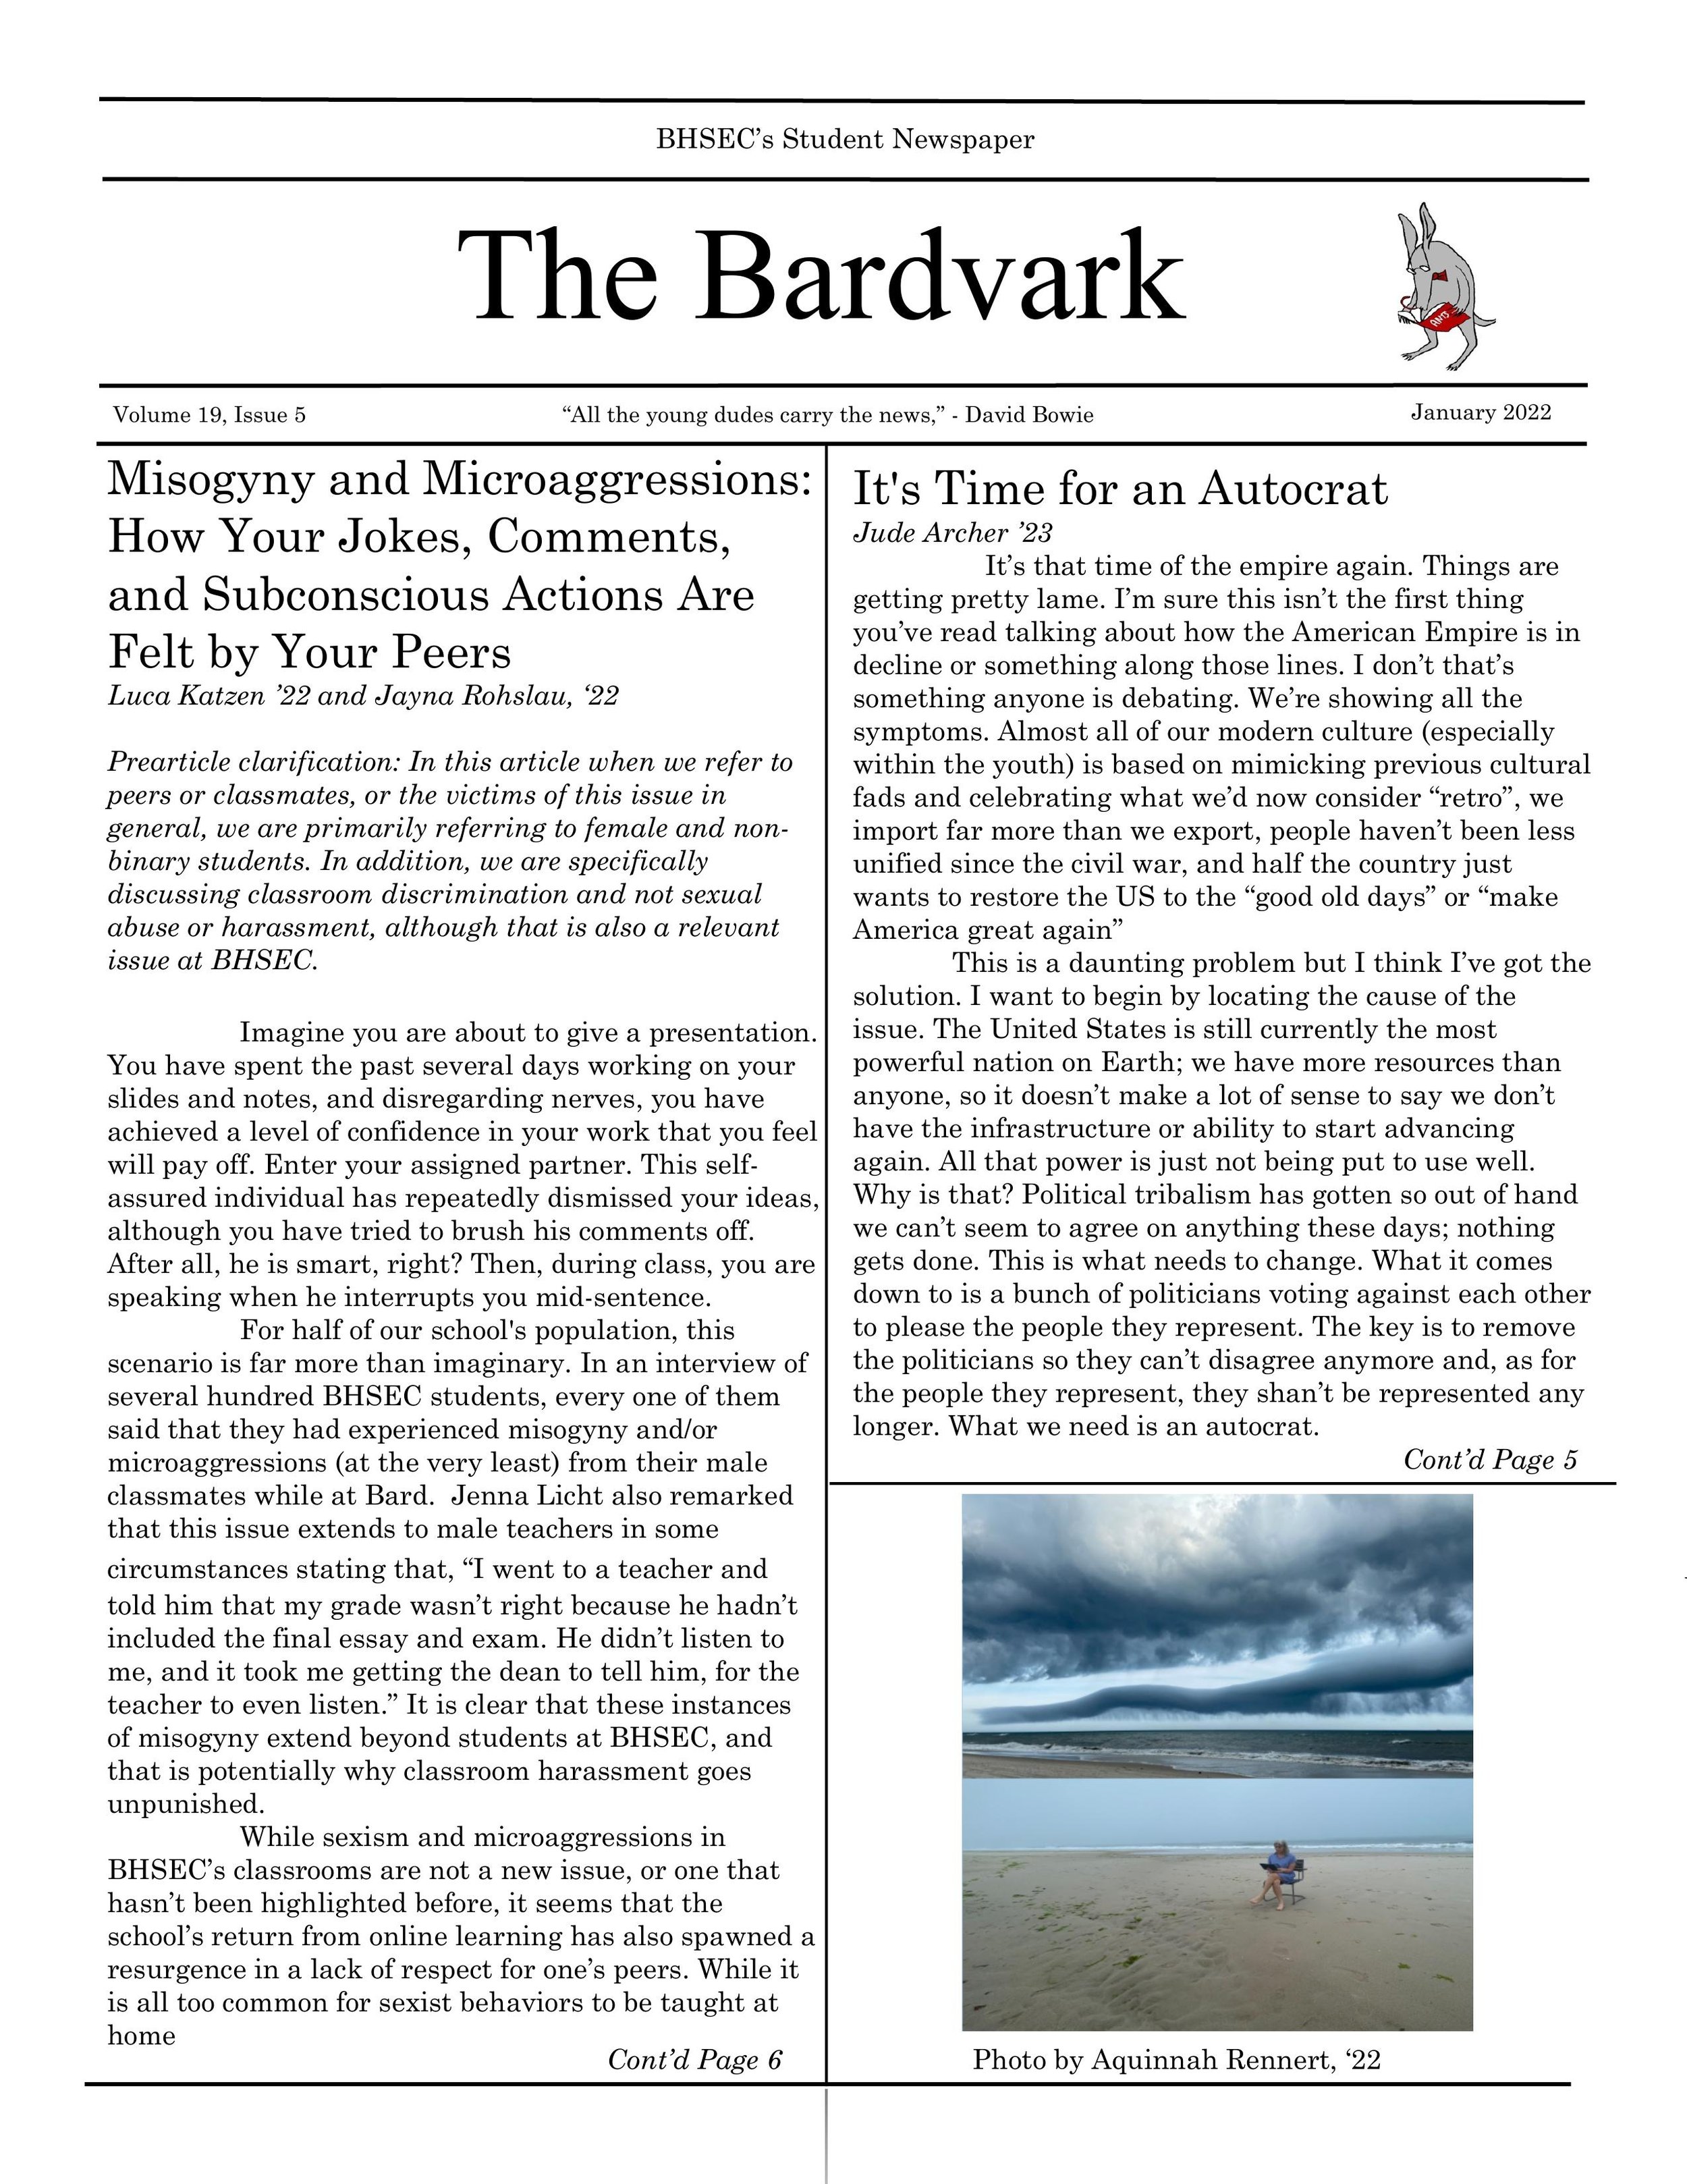 BARDVARK_January_Issue_-1[1].jpg